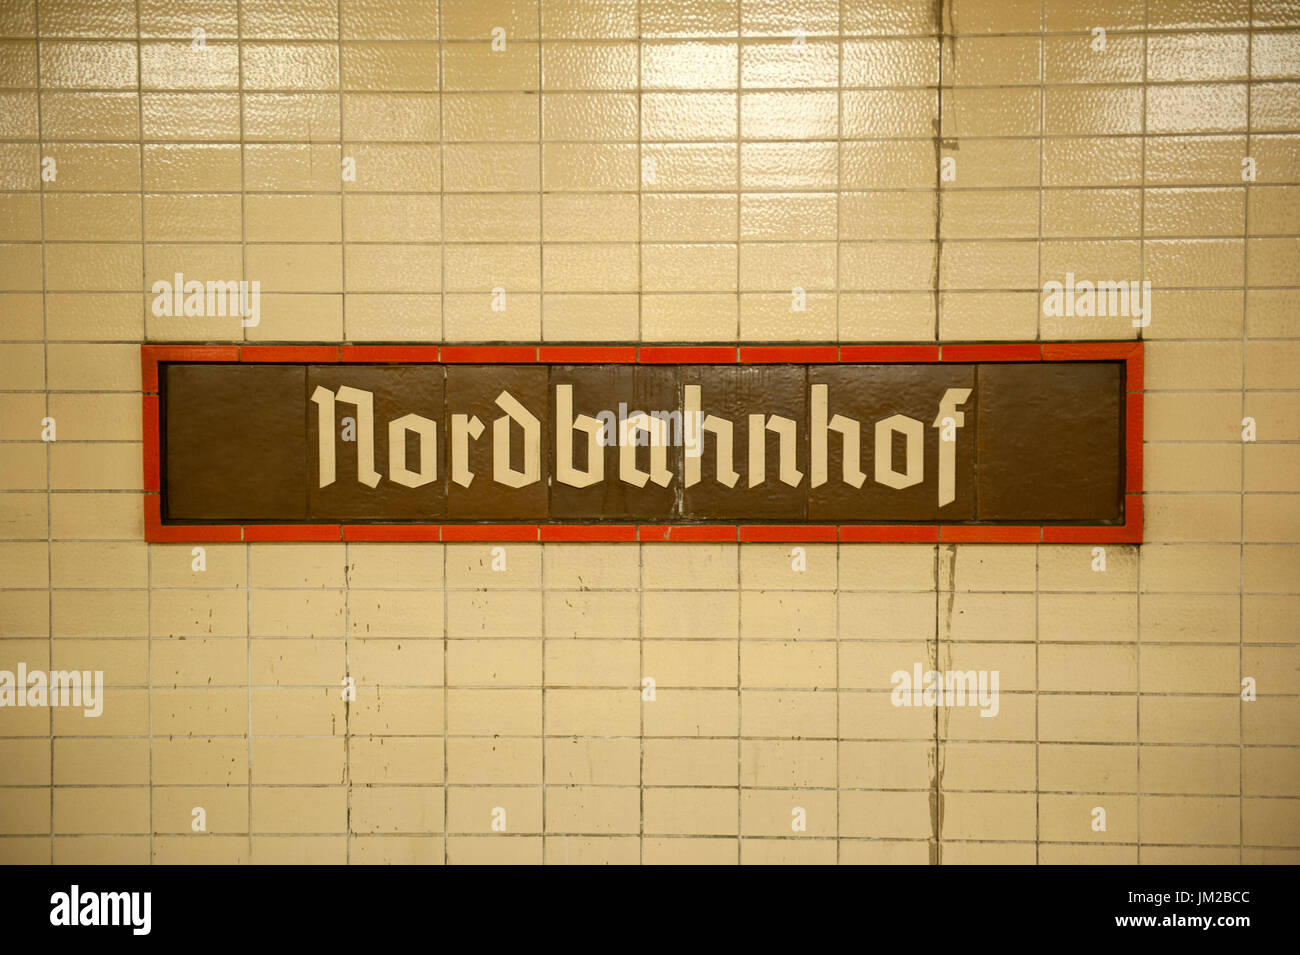 L'affichage à l'intérieur de la station de S-Bahn Nordbahnhof, Berlin, Allemagne Banque D'Images